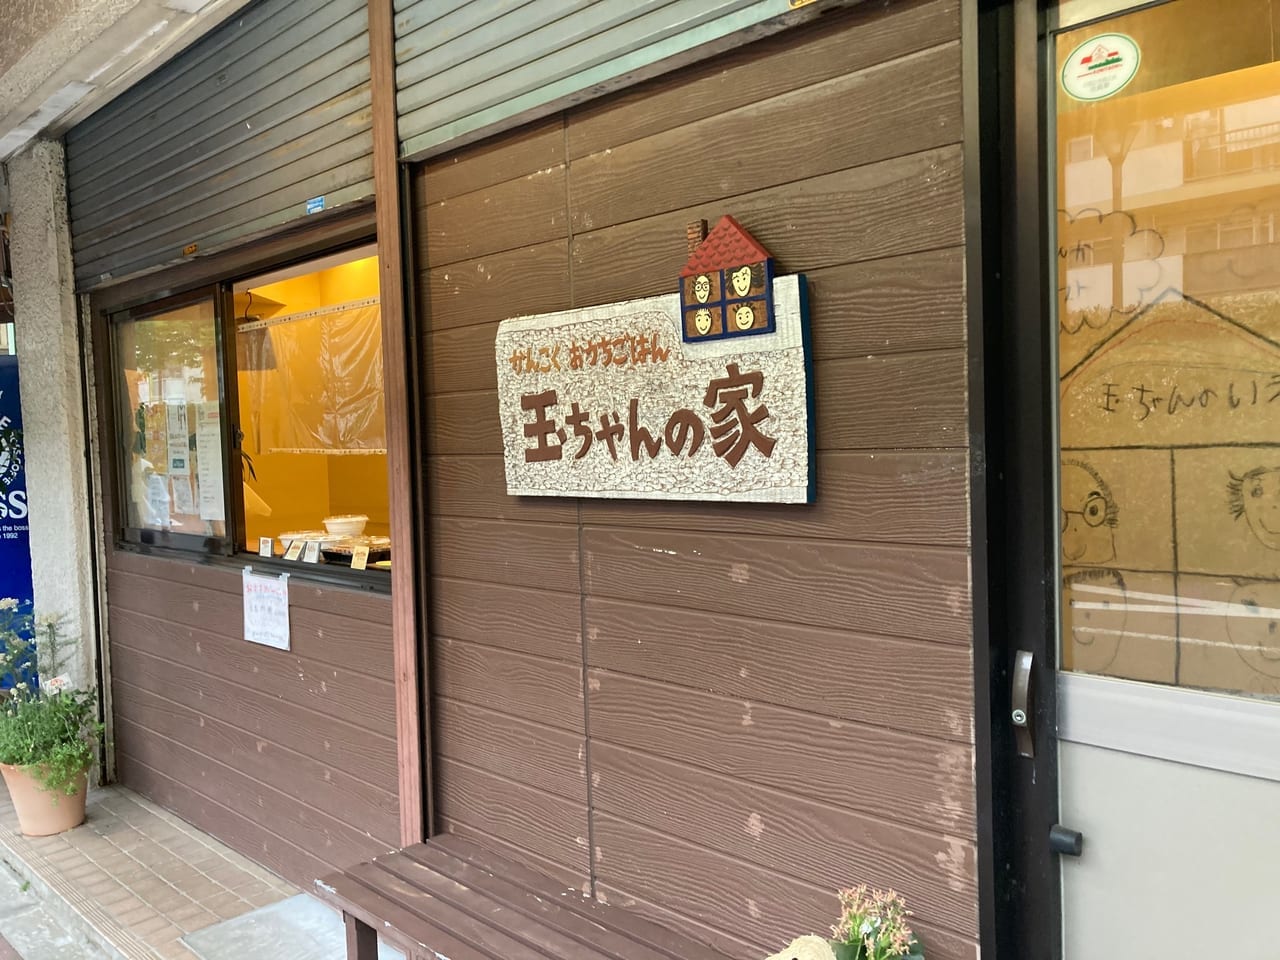 谷保のダイヤ商店街に韓国料理店『玉ちゃんの家』がオープンしていました！